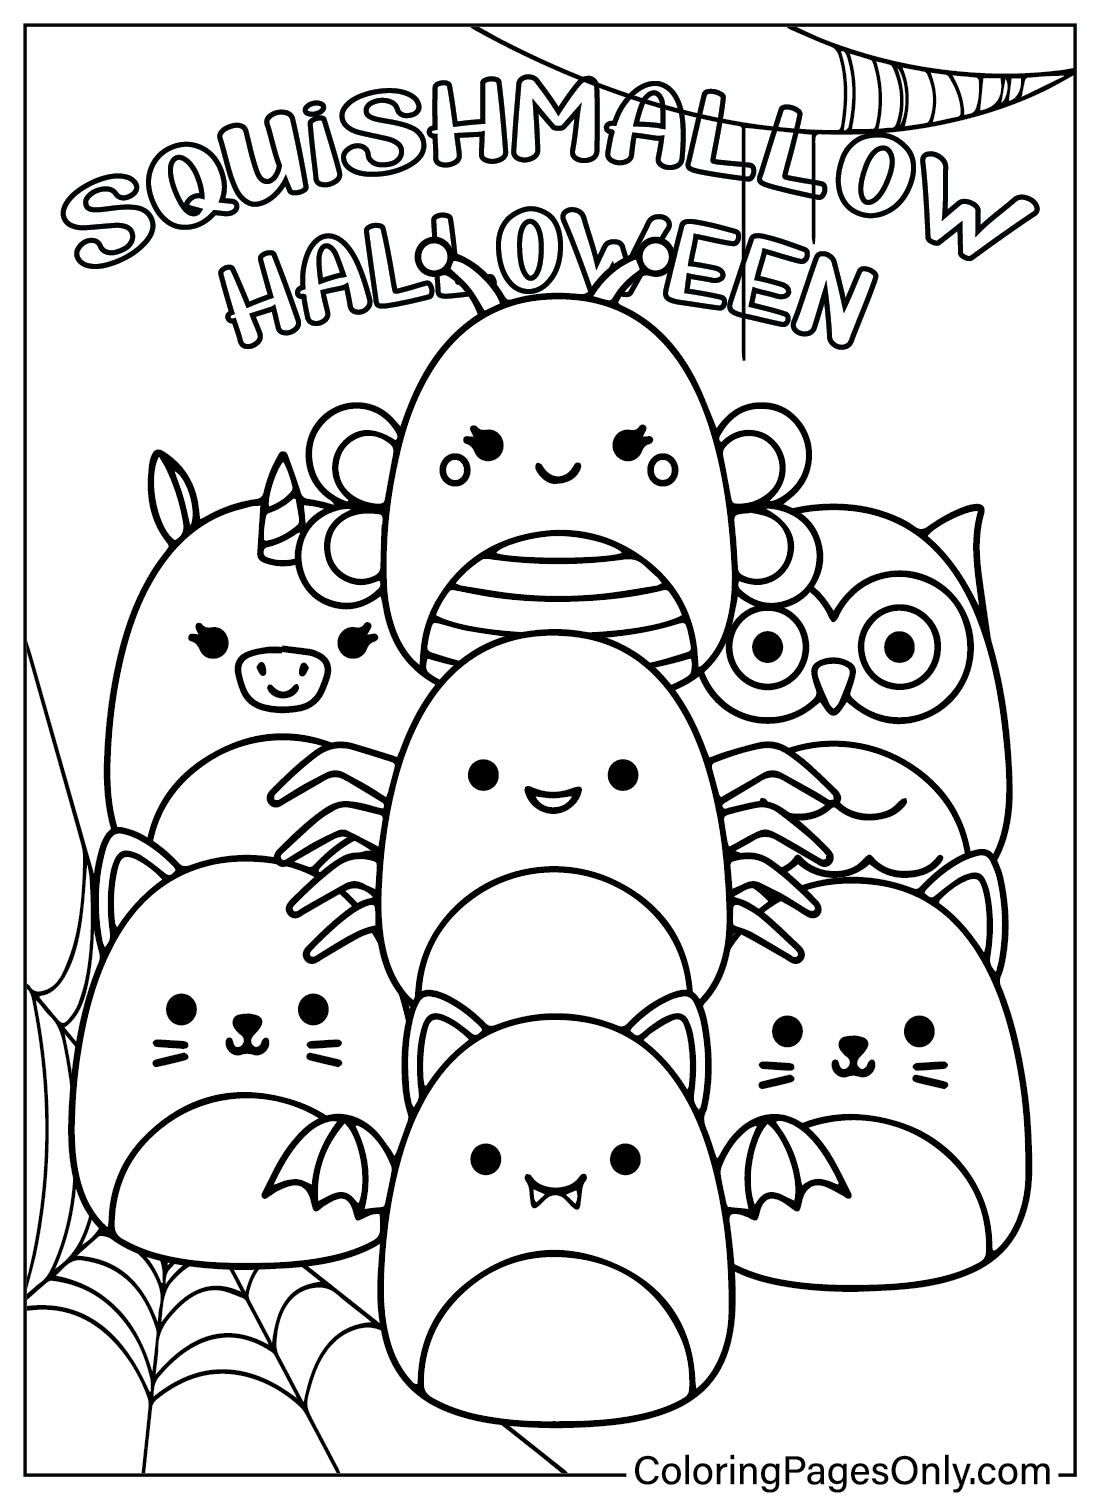 صفحات تلوين Squishmallow للهالوين من Squishmallow Halloween